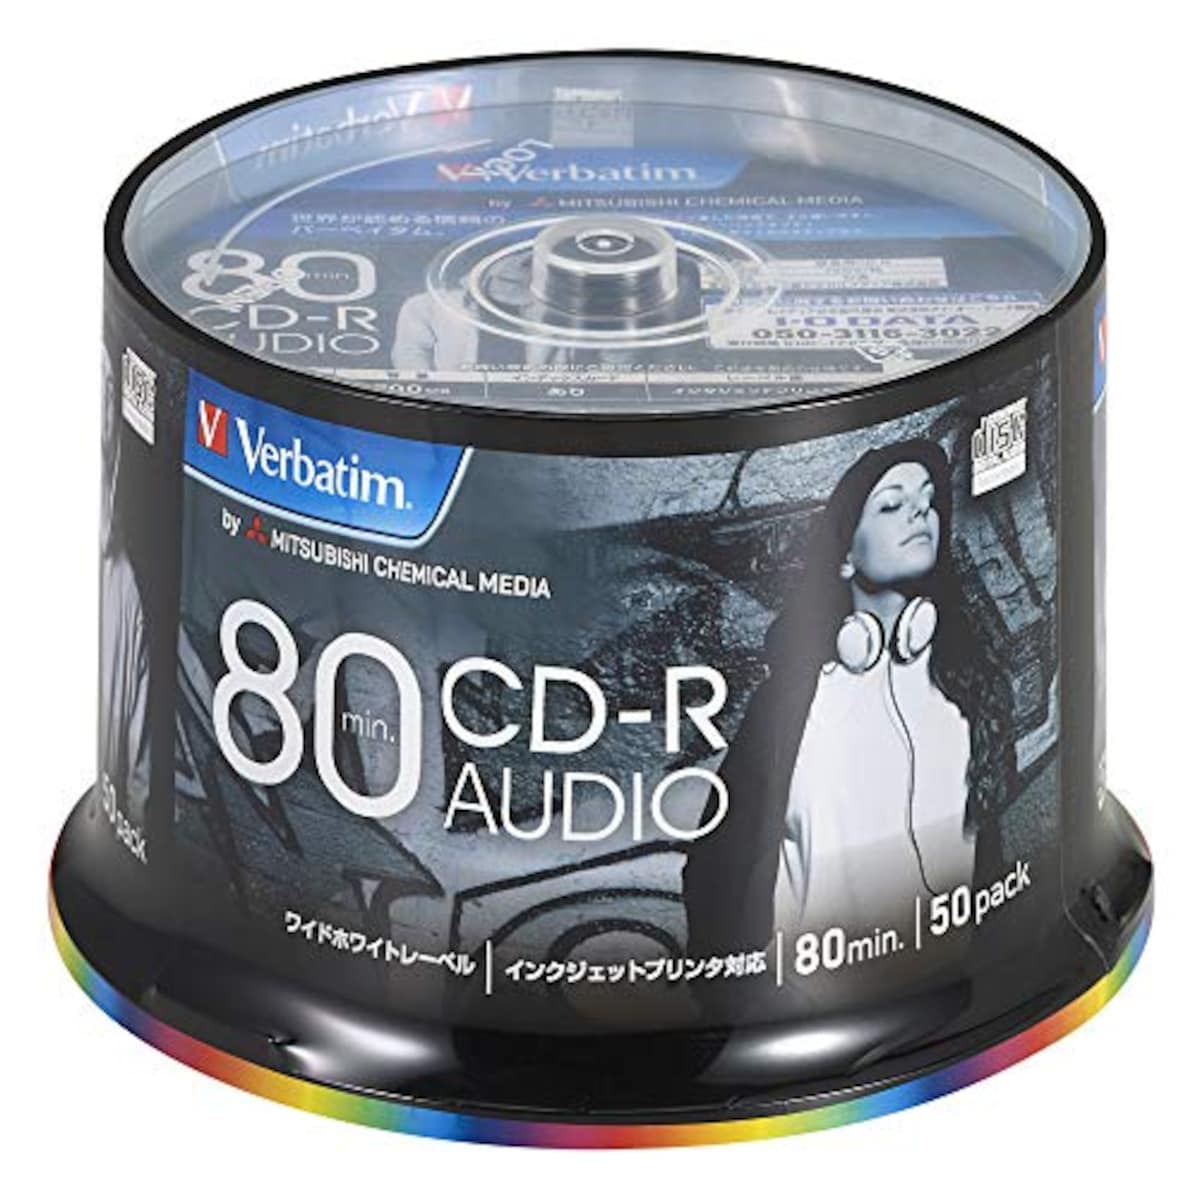  音楽用 CD-R 50枚 ホワイトプリンタブル